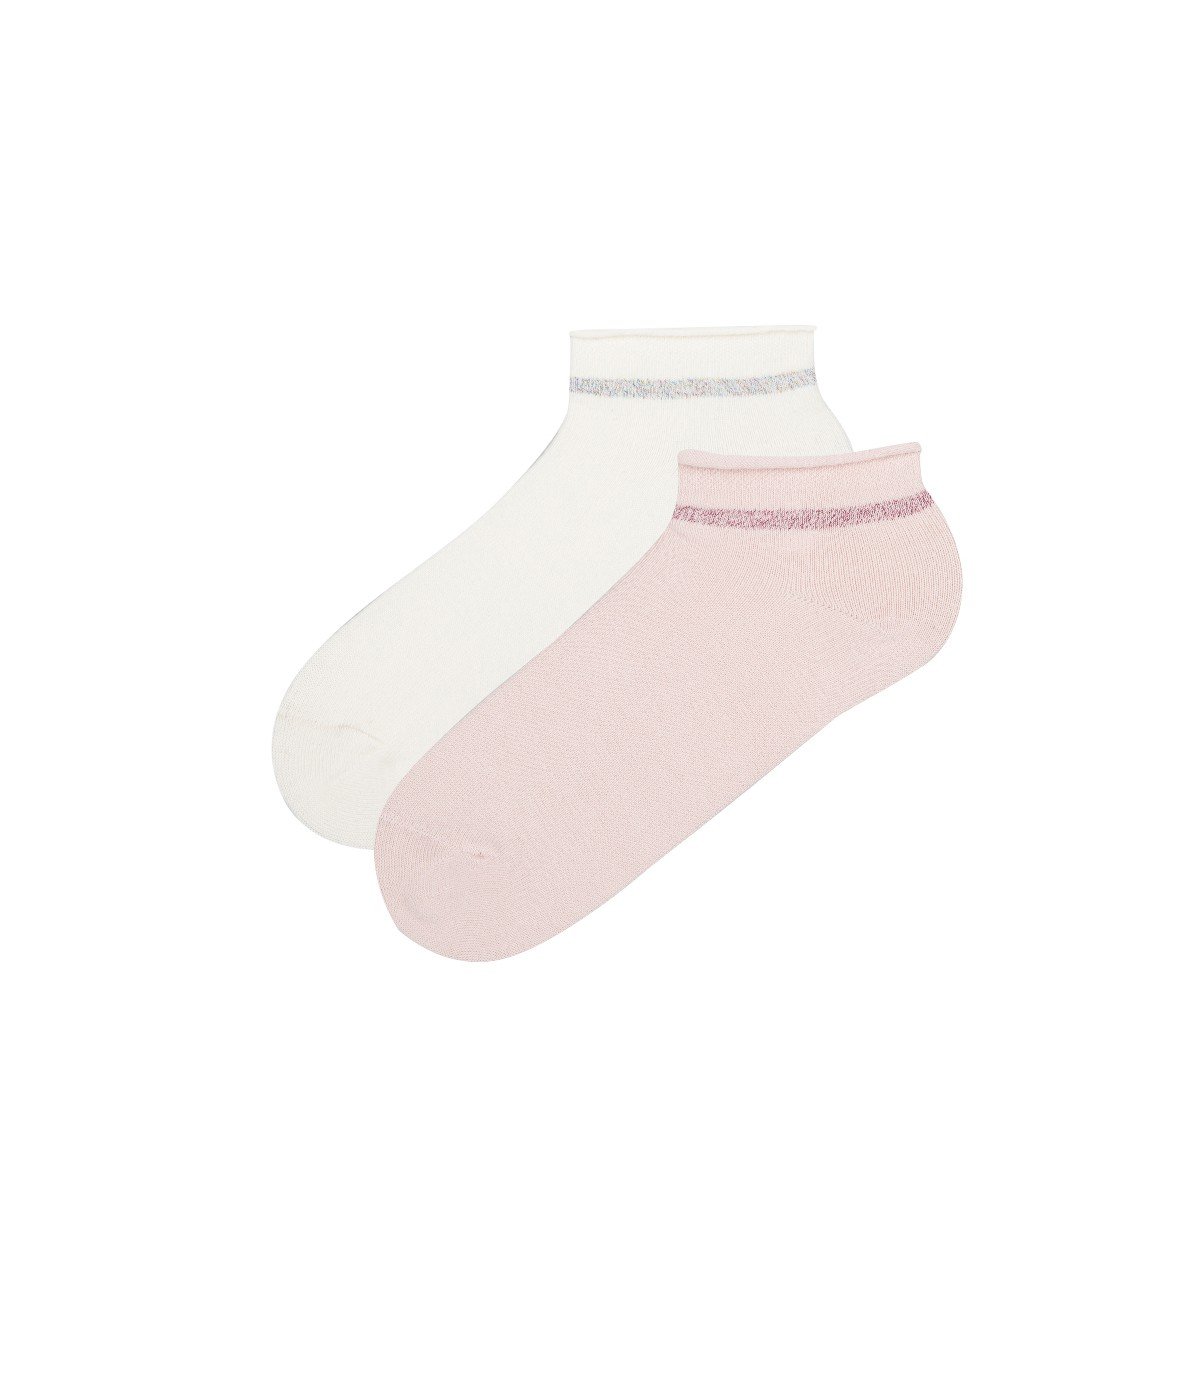 Cara 2 in 1 Liner Socks